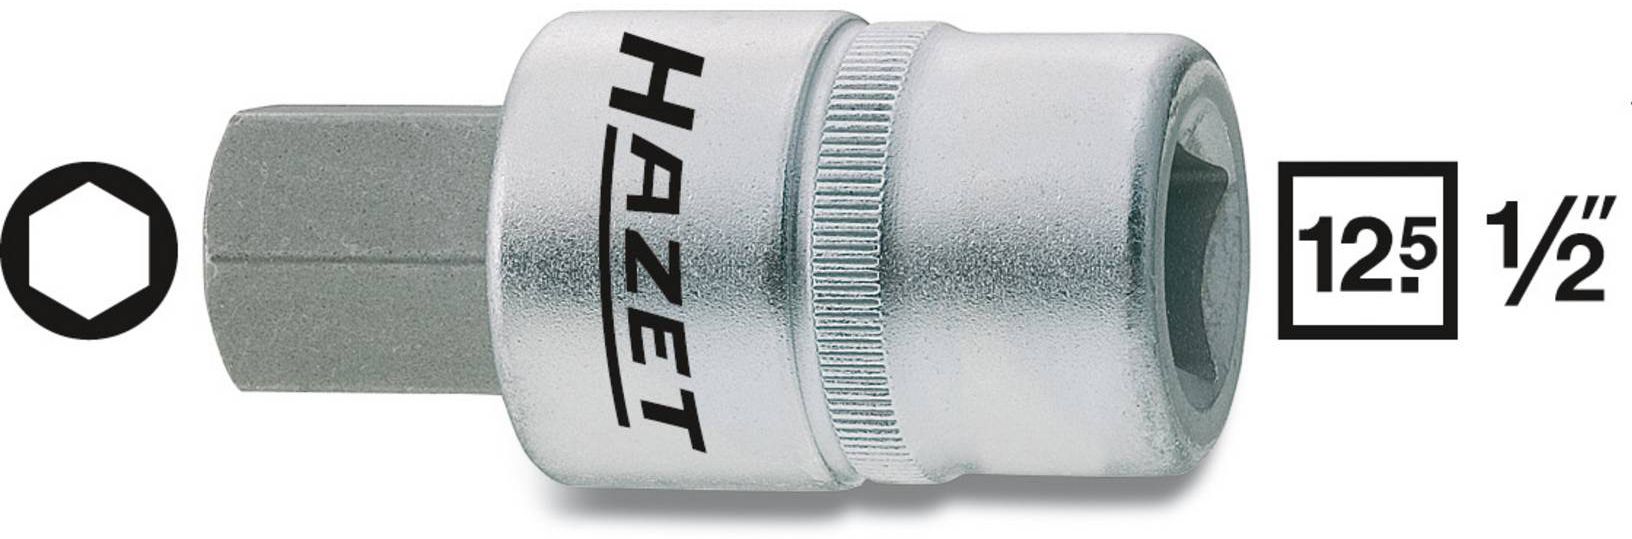 HAZET Schraubendreher-Einsatz, Inbus 986-12mm, 1/2", L: 60mm, D: 24,6mm - Steck- und Drehmomentschlüssel